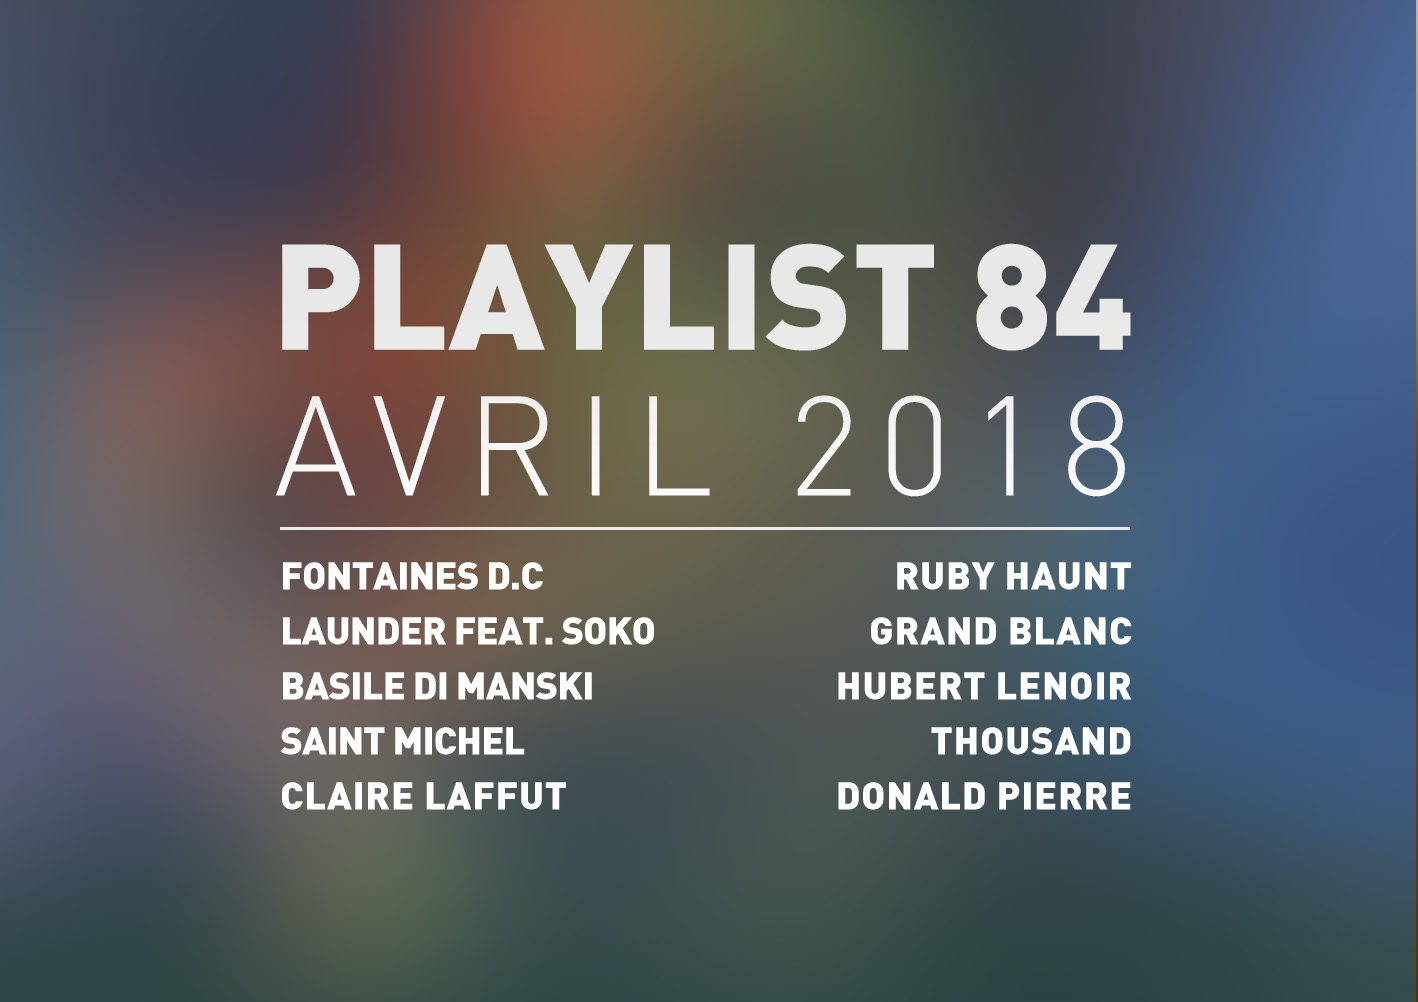 Playlist #84 : Launder, Saint Michel, Claire Laffut, Thousand, etc.